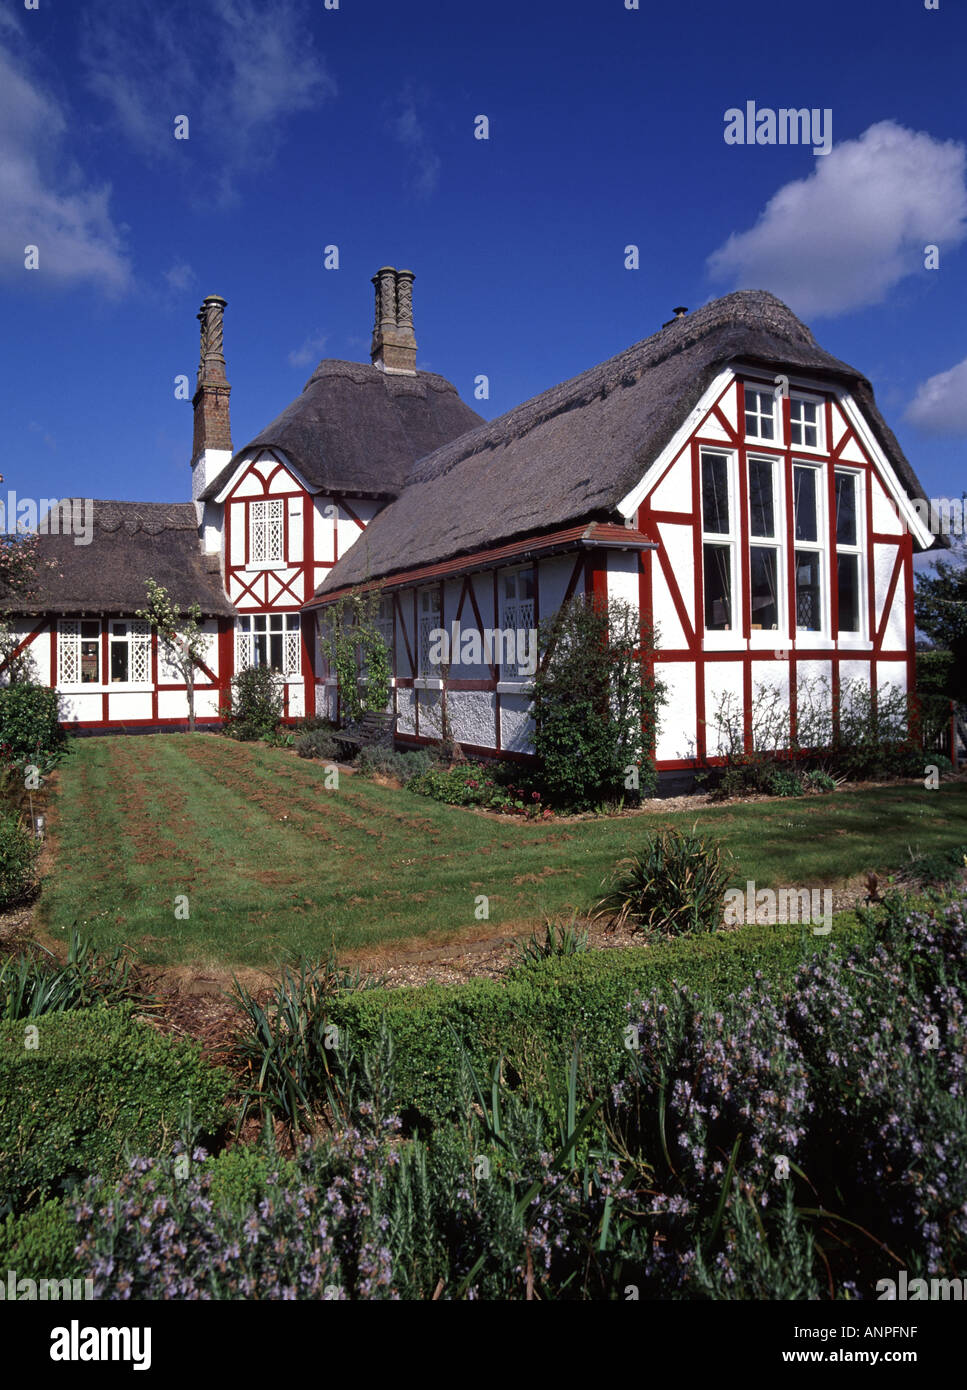 Historical1845 Grade II inscrit Somerleyton comté primaire village école thatched Mur de toit en bois et bois appliqué East Anglia Suffolk, Angleterre ROYAUME-UNI Banque D'Images